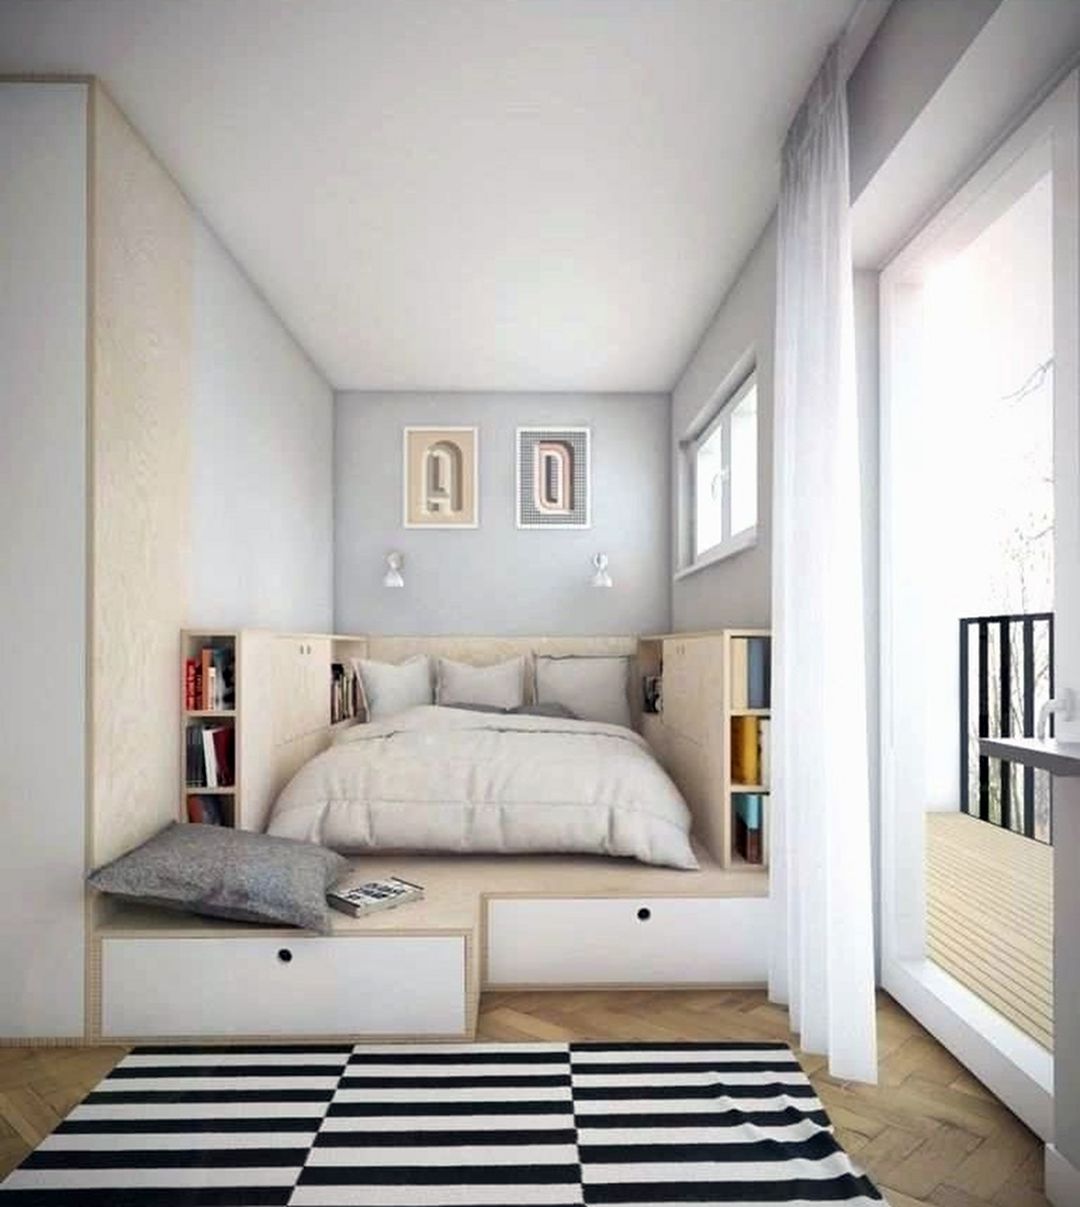 Tiny Bedroom